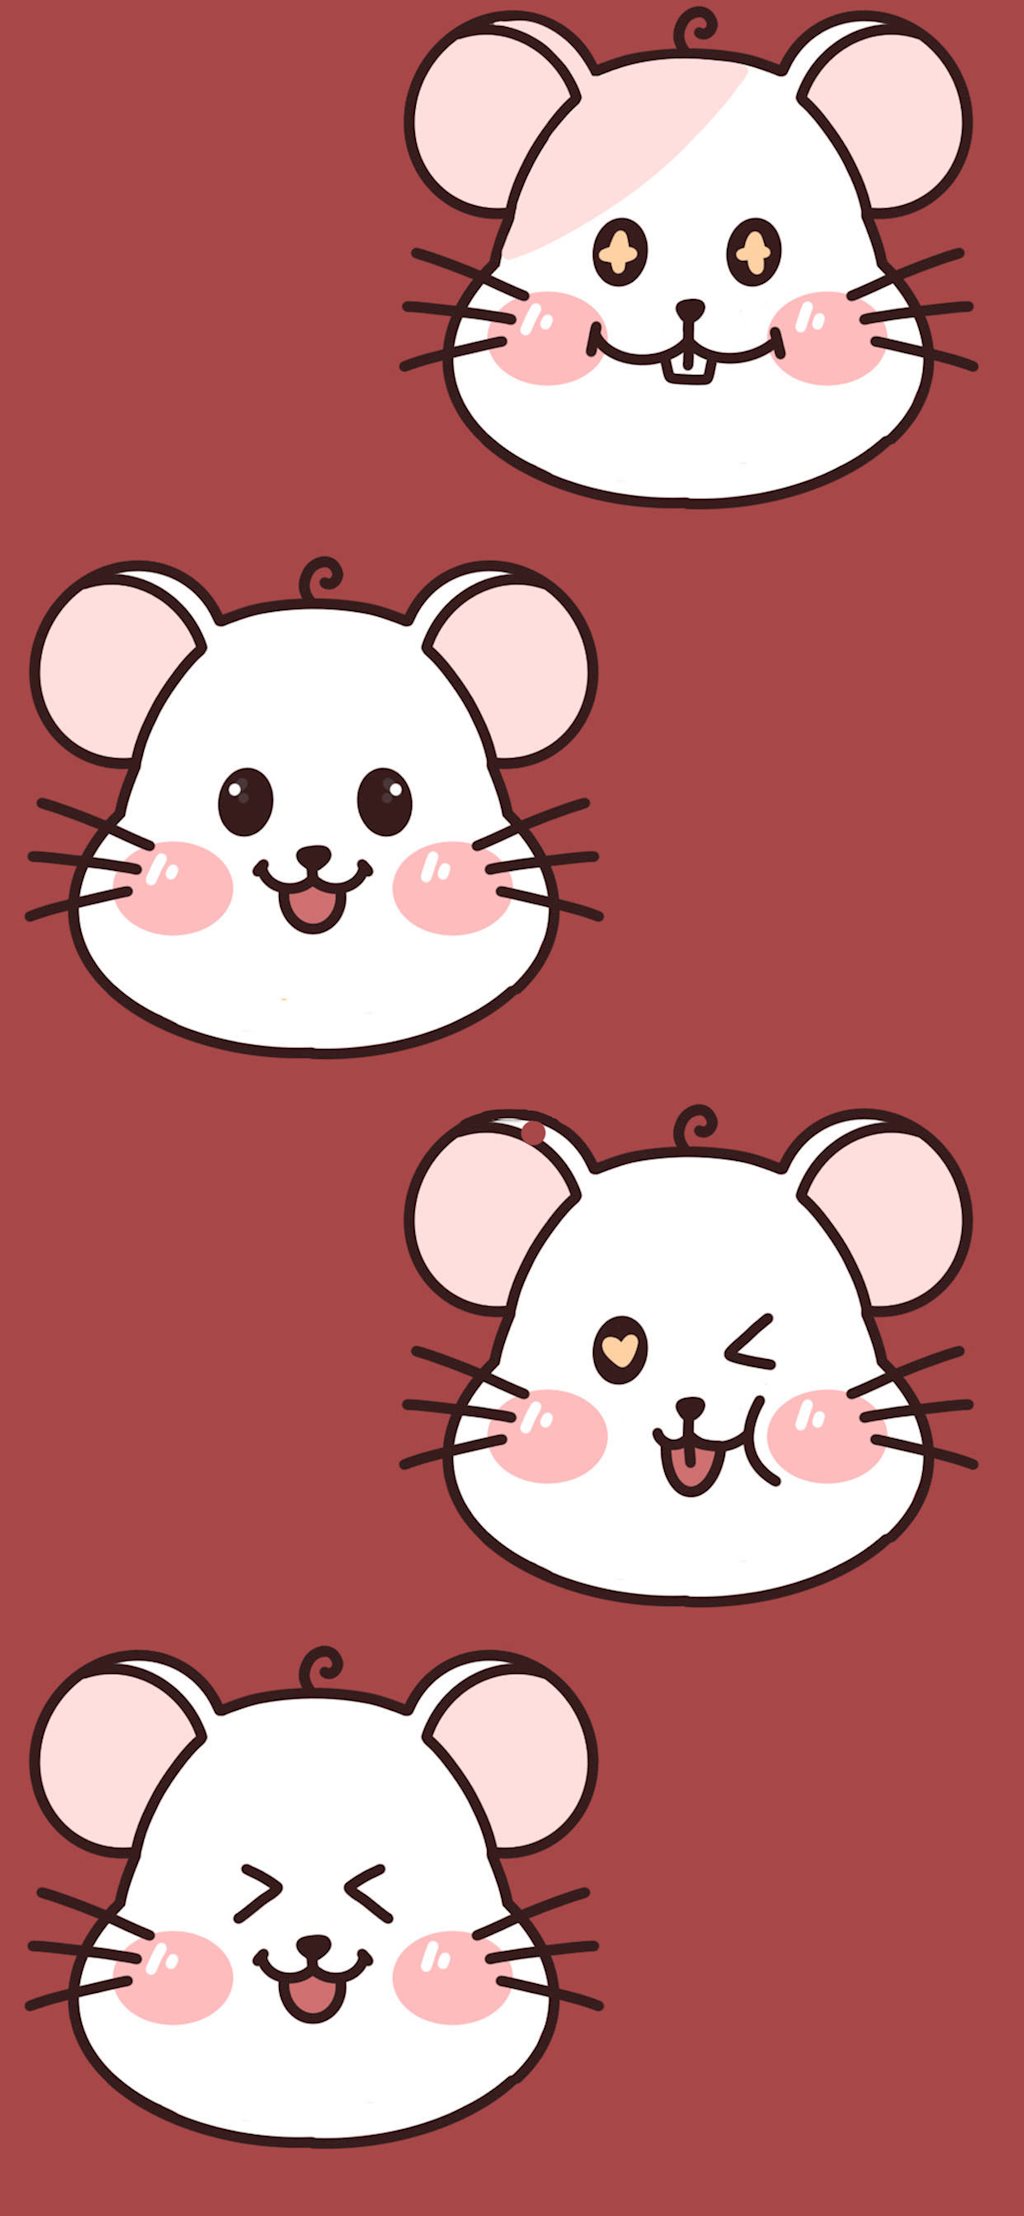 Xem hơn 100 ảnh về hình vẽ con chuột dễ thương  daotaonec